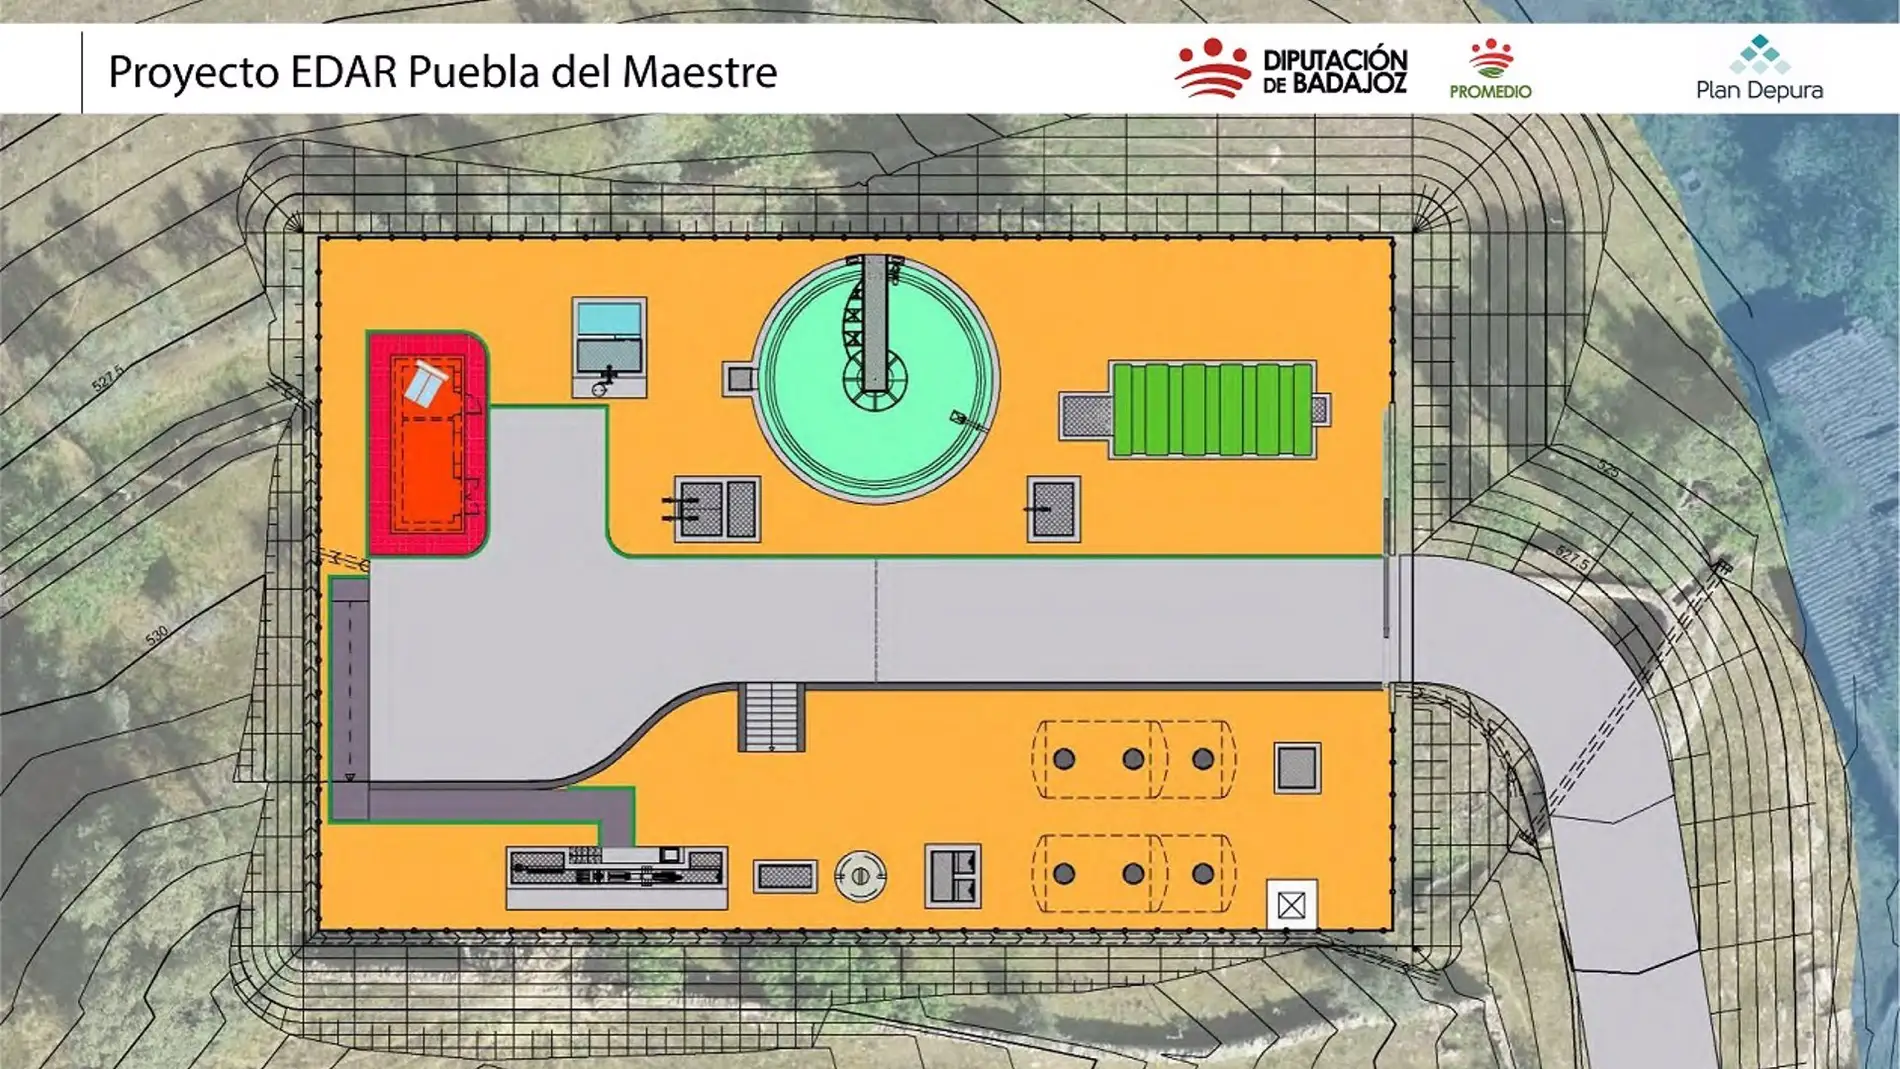 Diputación de Badajoz licita las depuradoras de Puebla del Maestre y Reina con un presupuesto de 1,4 millones